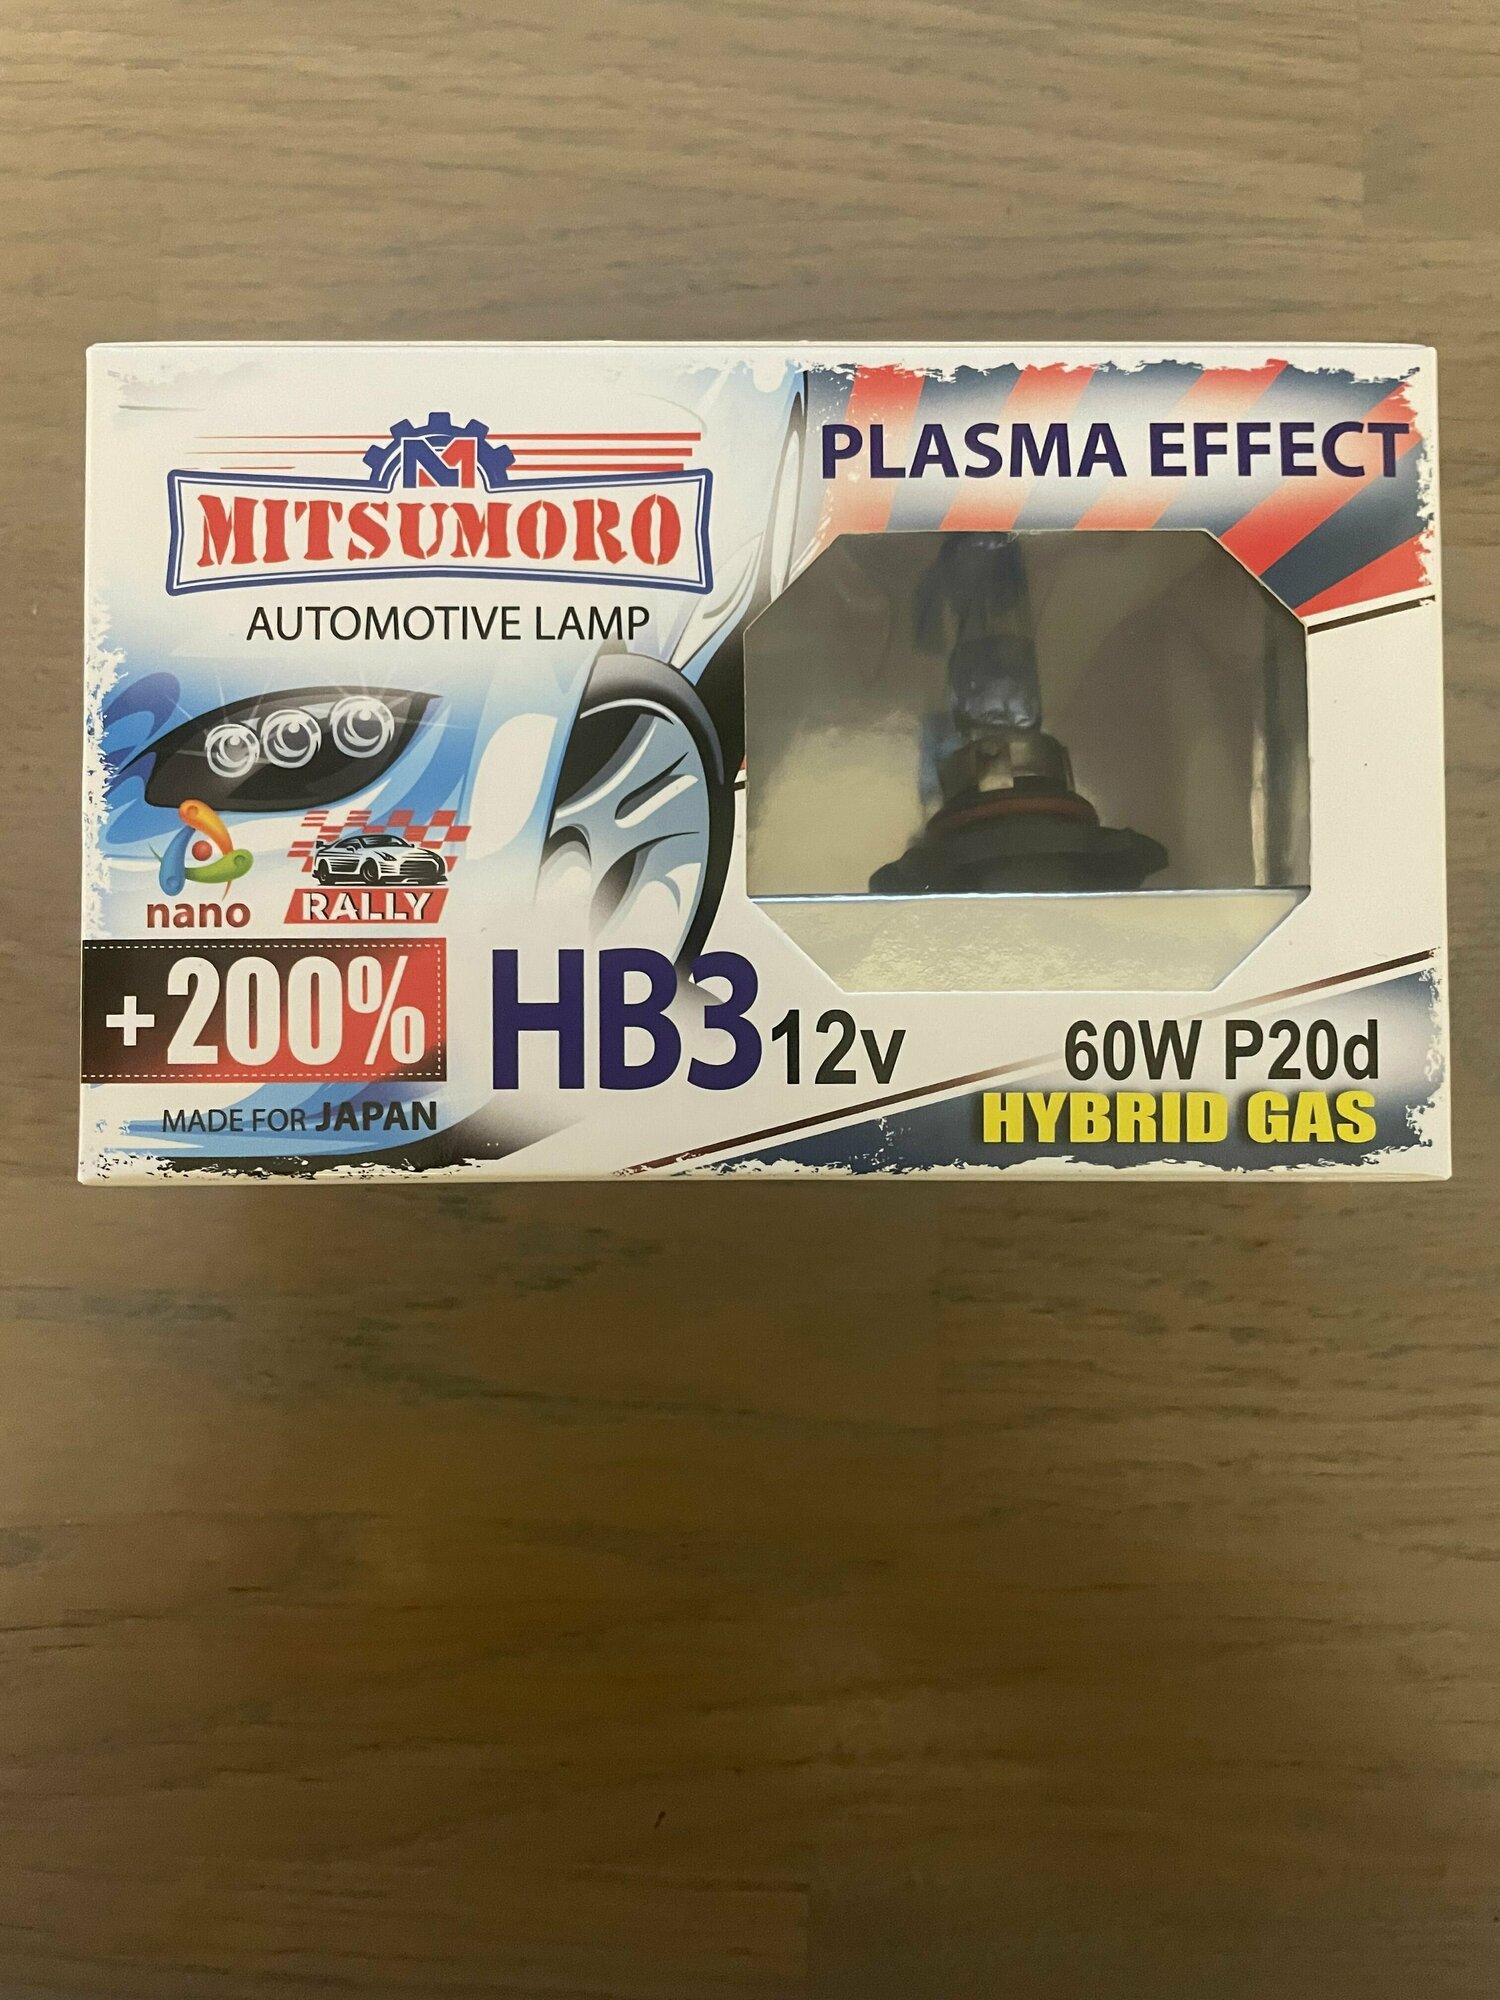 Галогеновая лампа Mitsumoro HB3 12V 60W P20d +200% PLASMA EFFECT